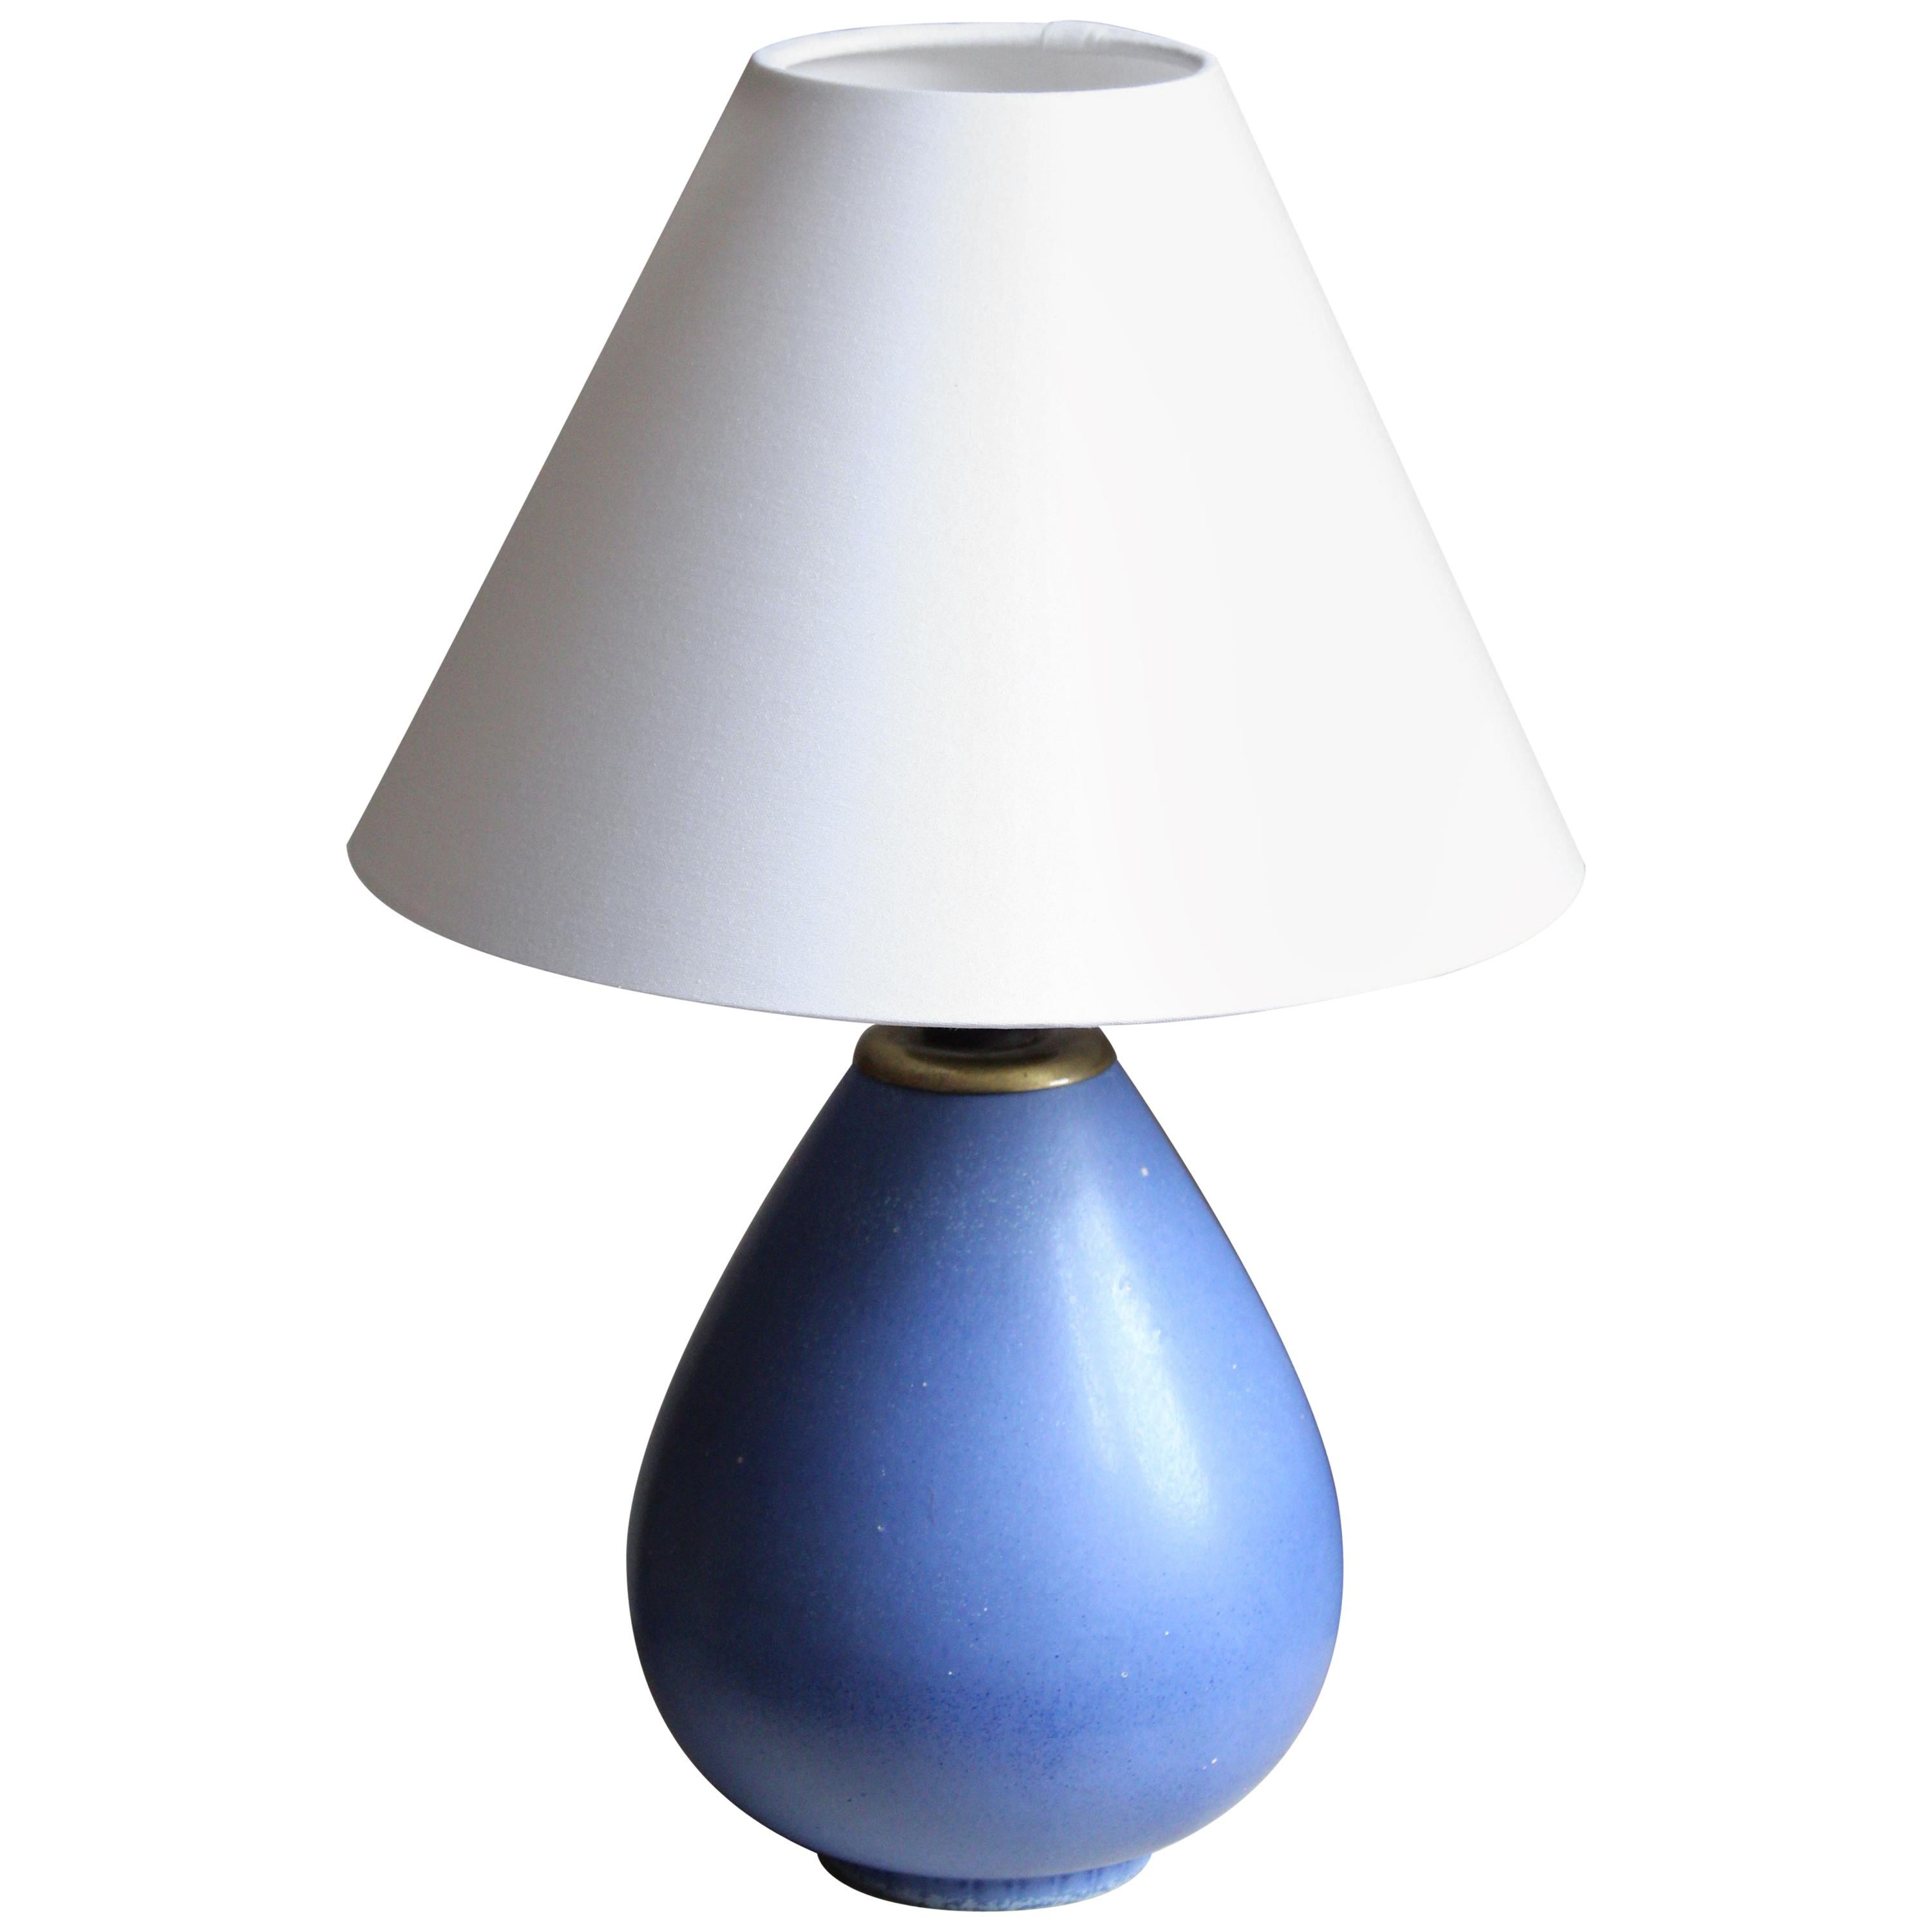 Gunnar Nylund, Table Lamp, Blue-Glazed Stoneware, Rörstand, Sweden, 1940s